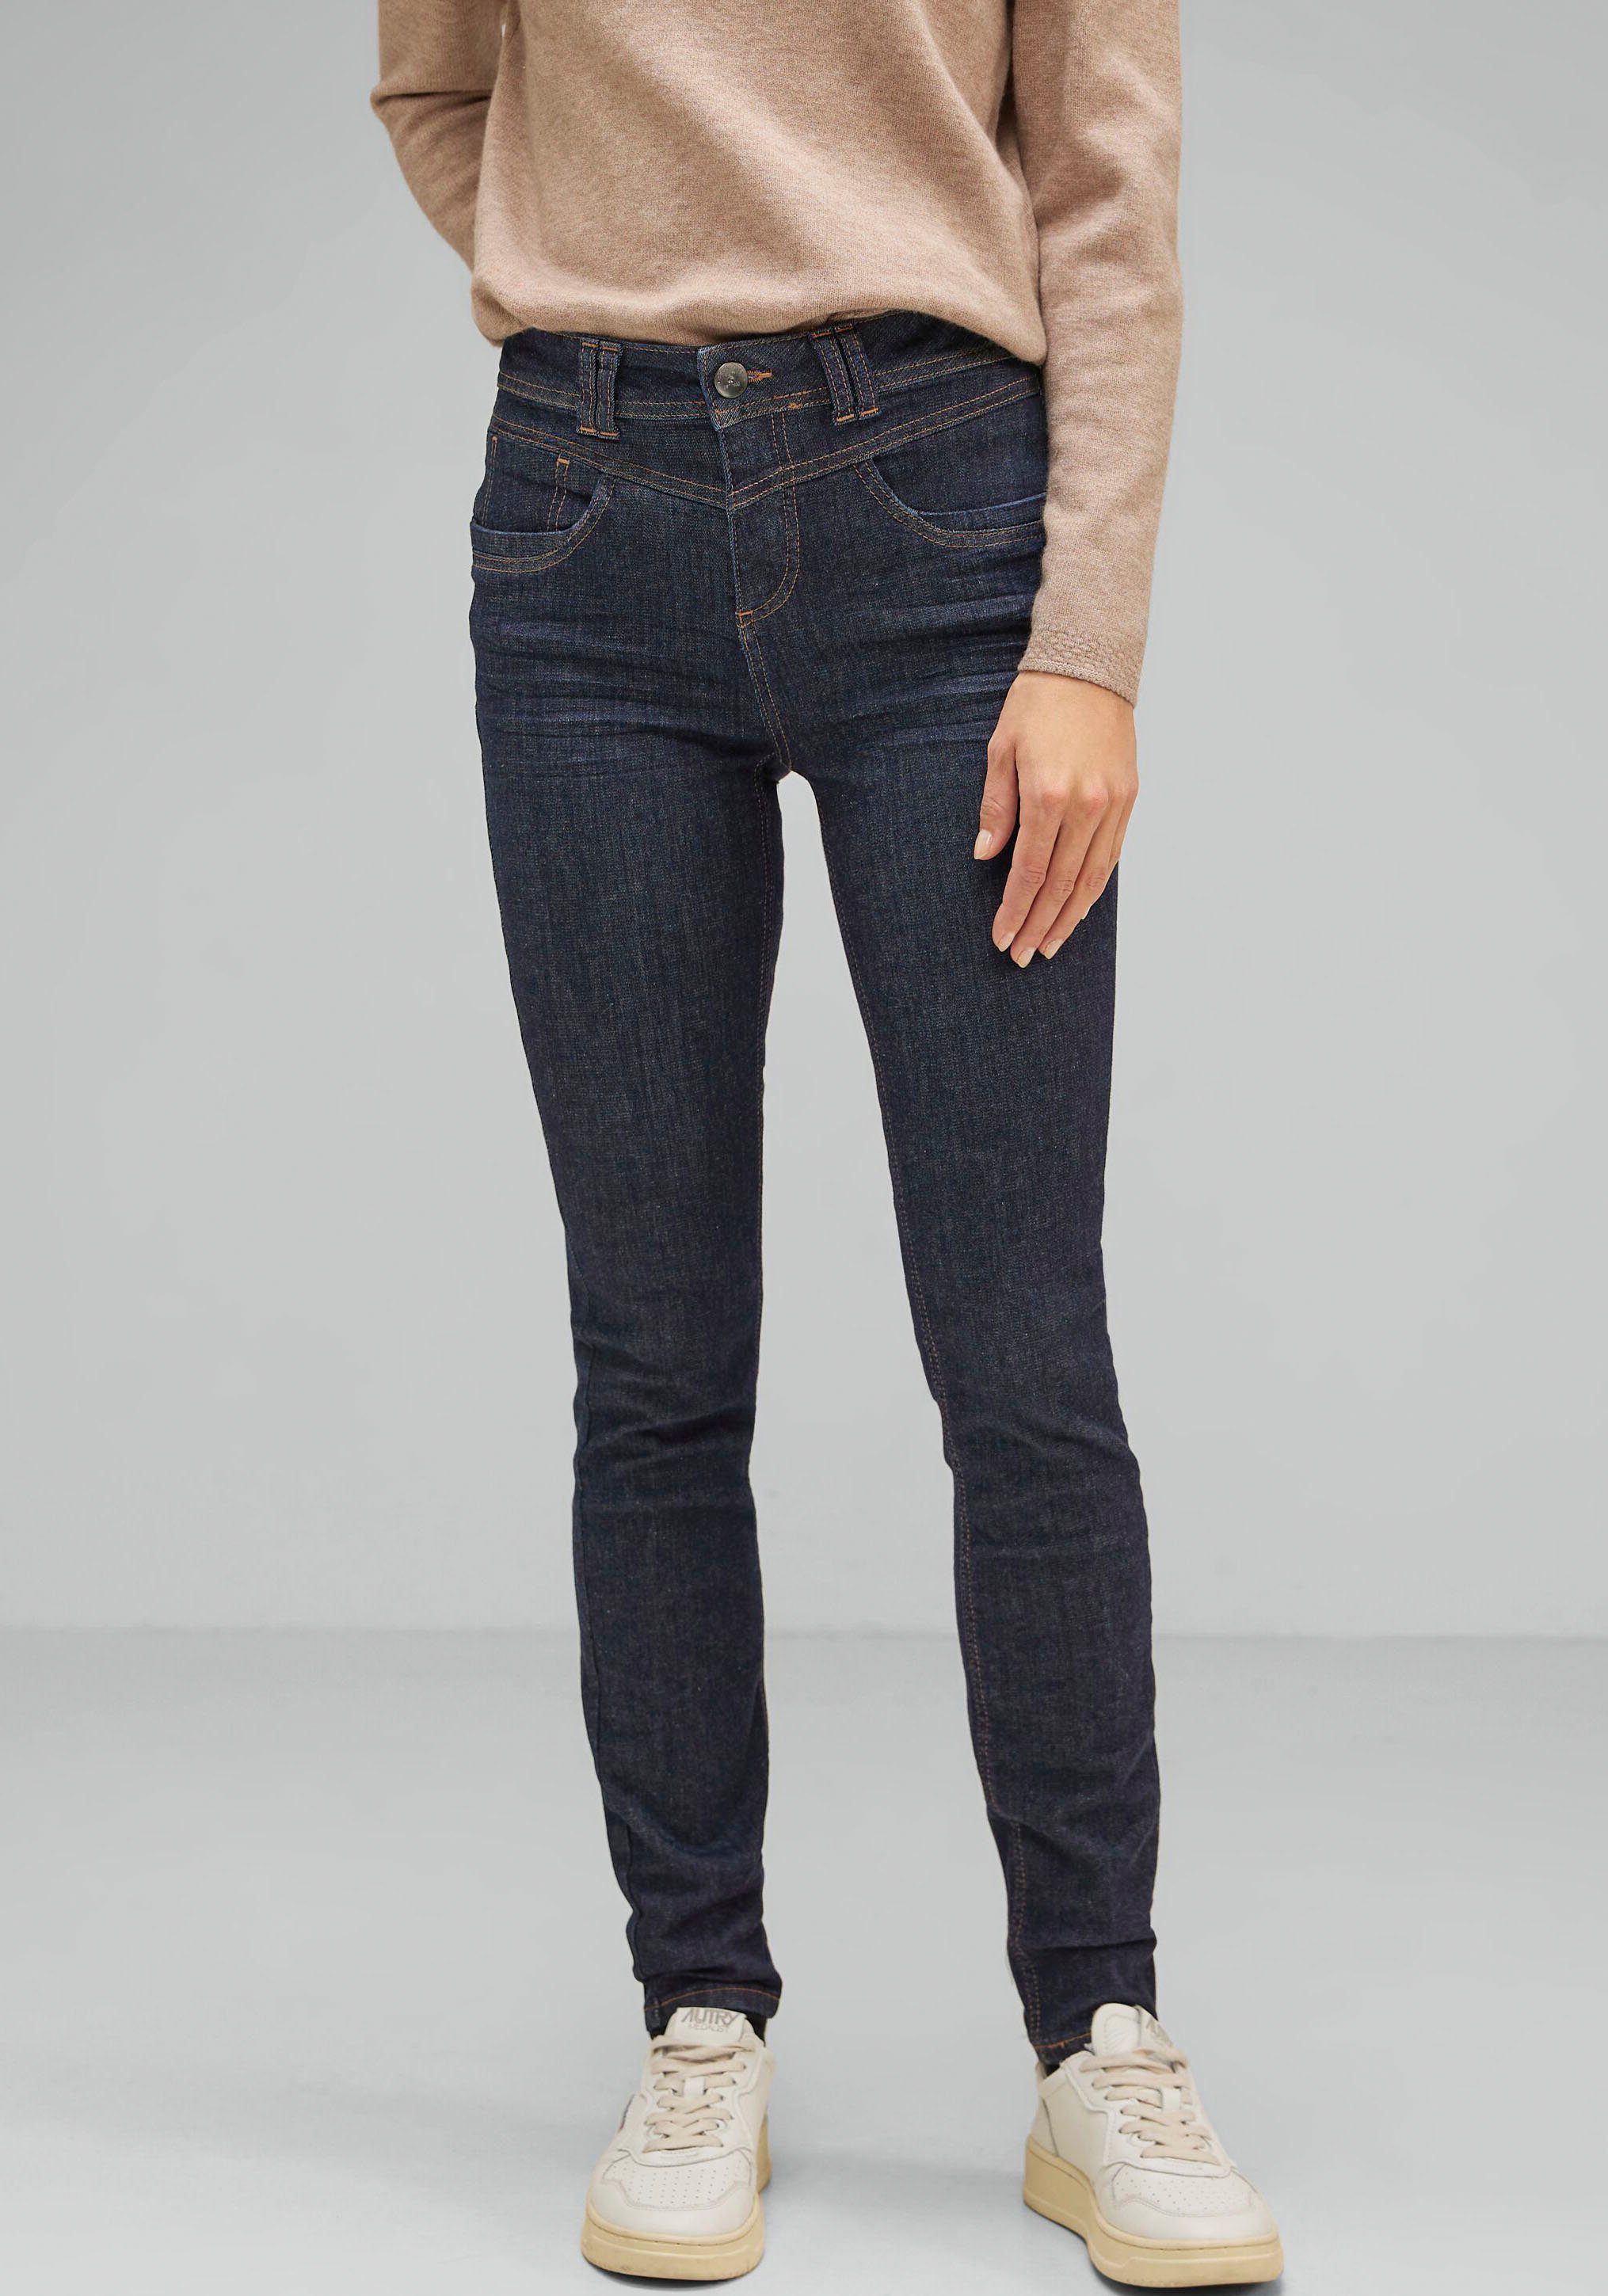 STREET ONE Slim-fit-Jeans im 5-Pocket-Stil, Slim fit mit schmalen Beinen  und hoher Leibhöhe